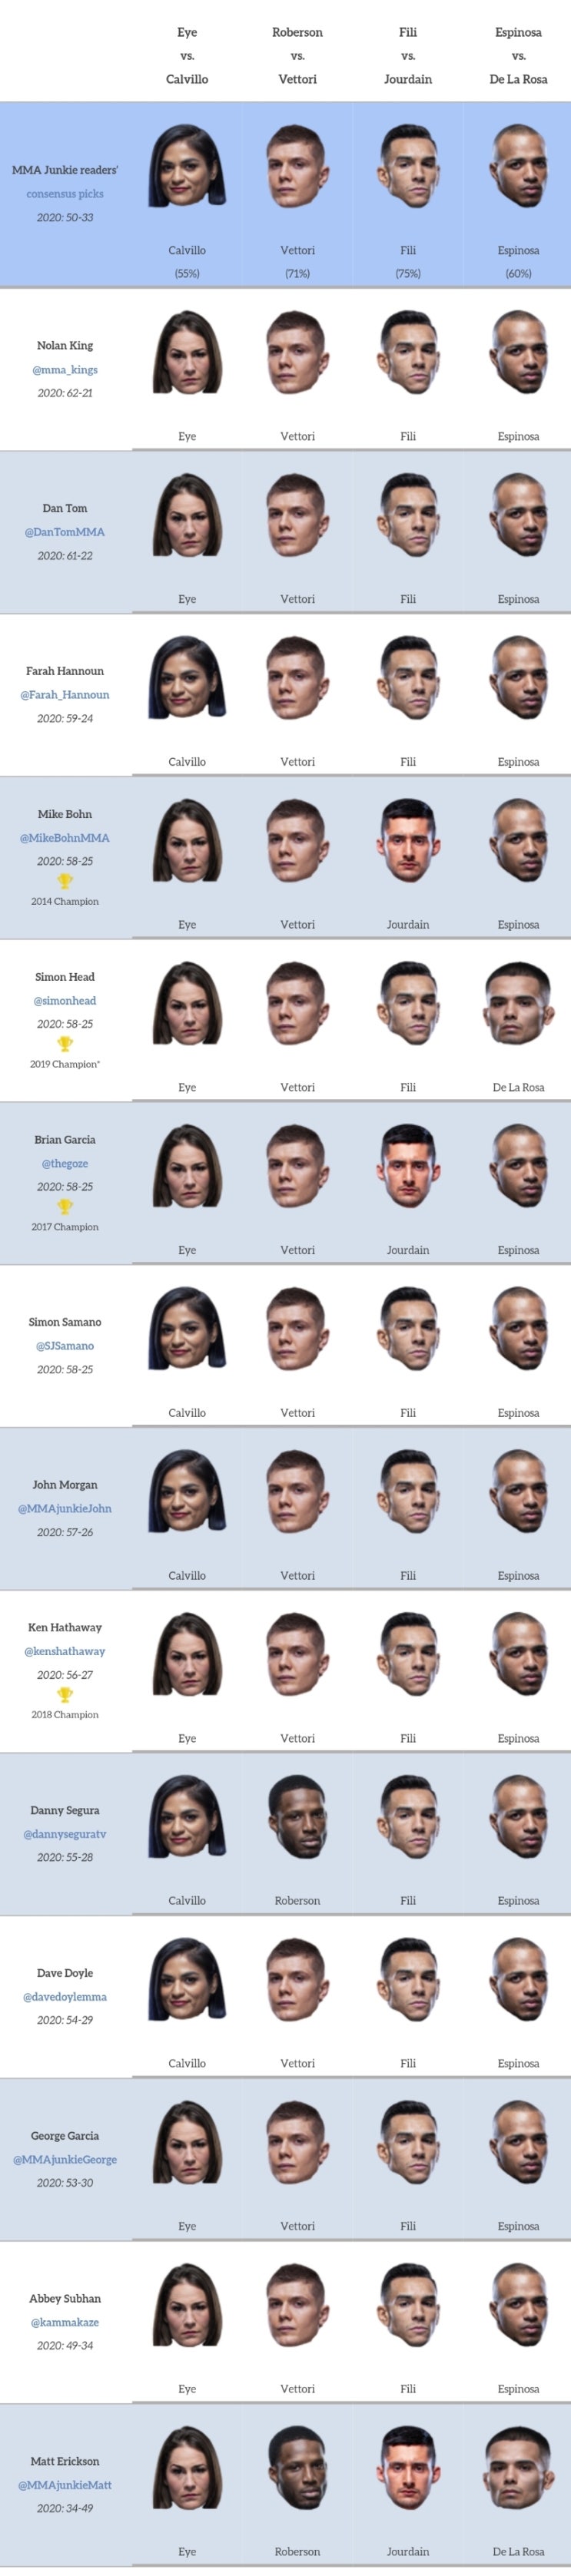 UFC APEX 2: 아이 vs 칼비요 프리뷰(미디어 예상 및 배당률)